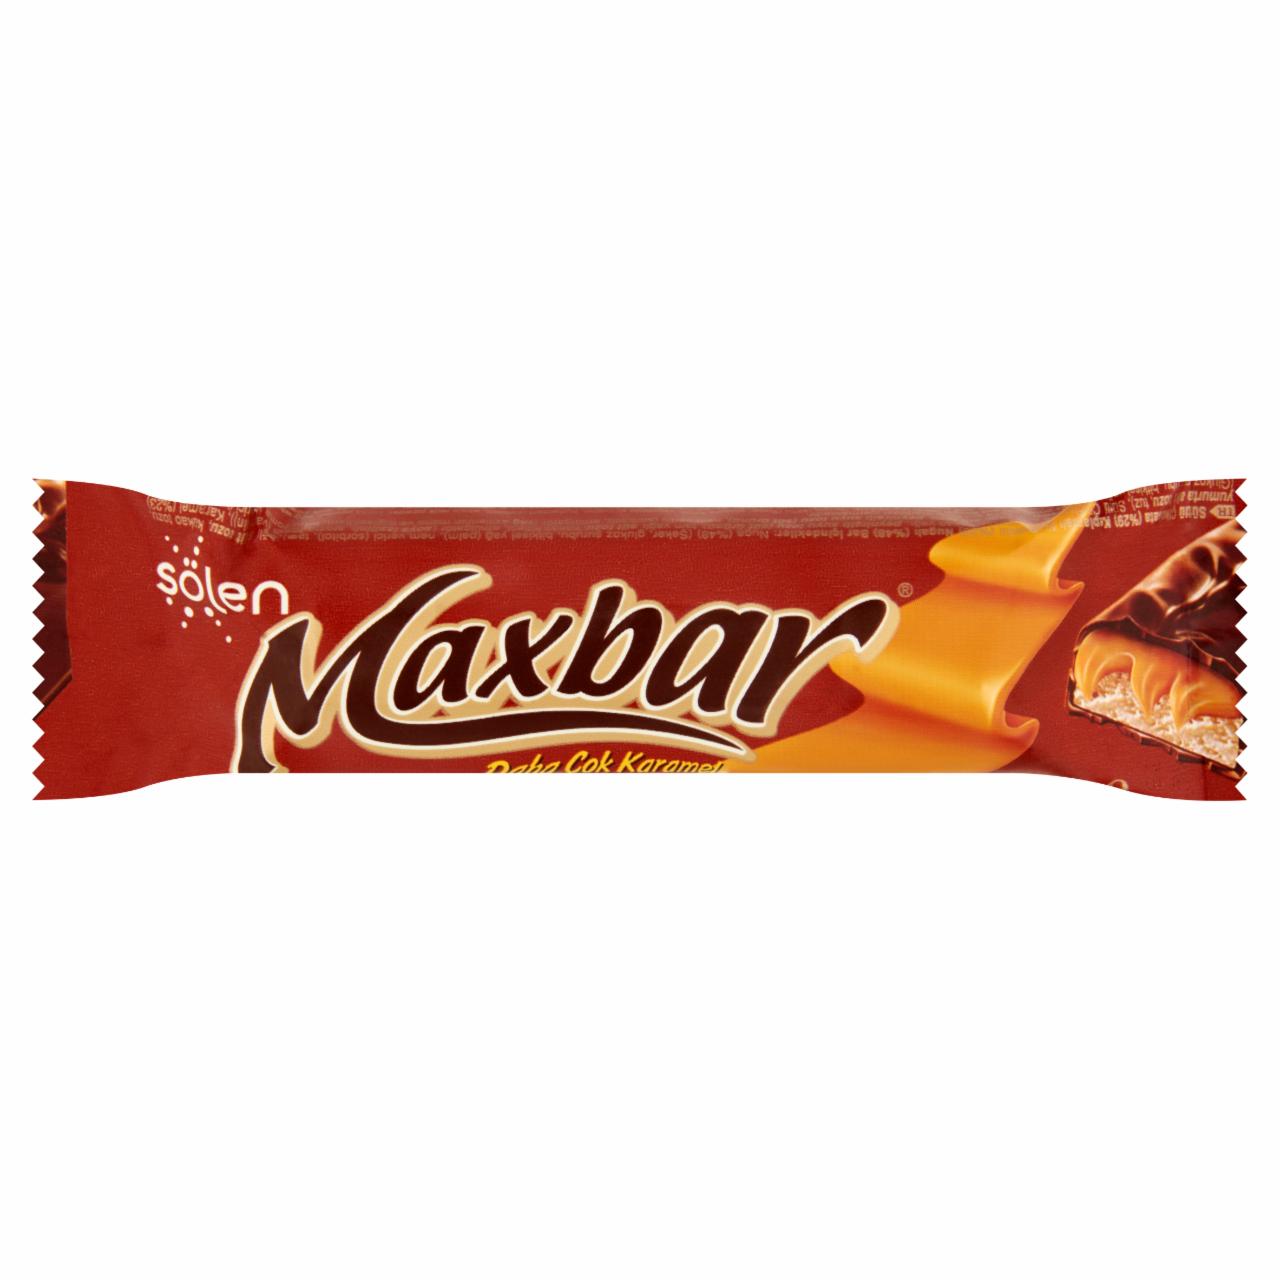 Képek - Sölen Maxbar tejcsokoládéval bevont szelet karamellával és kakaós krémmel 40 g